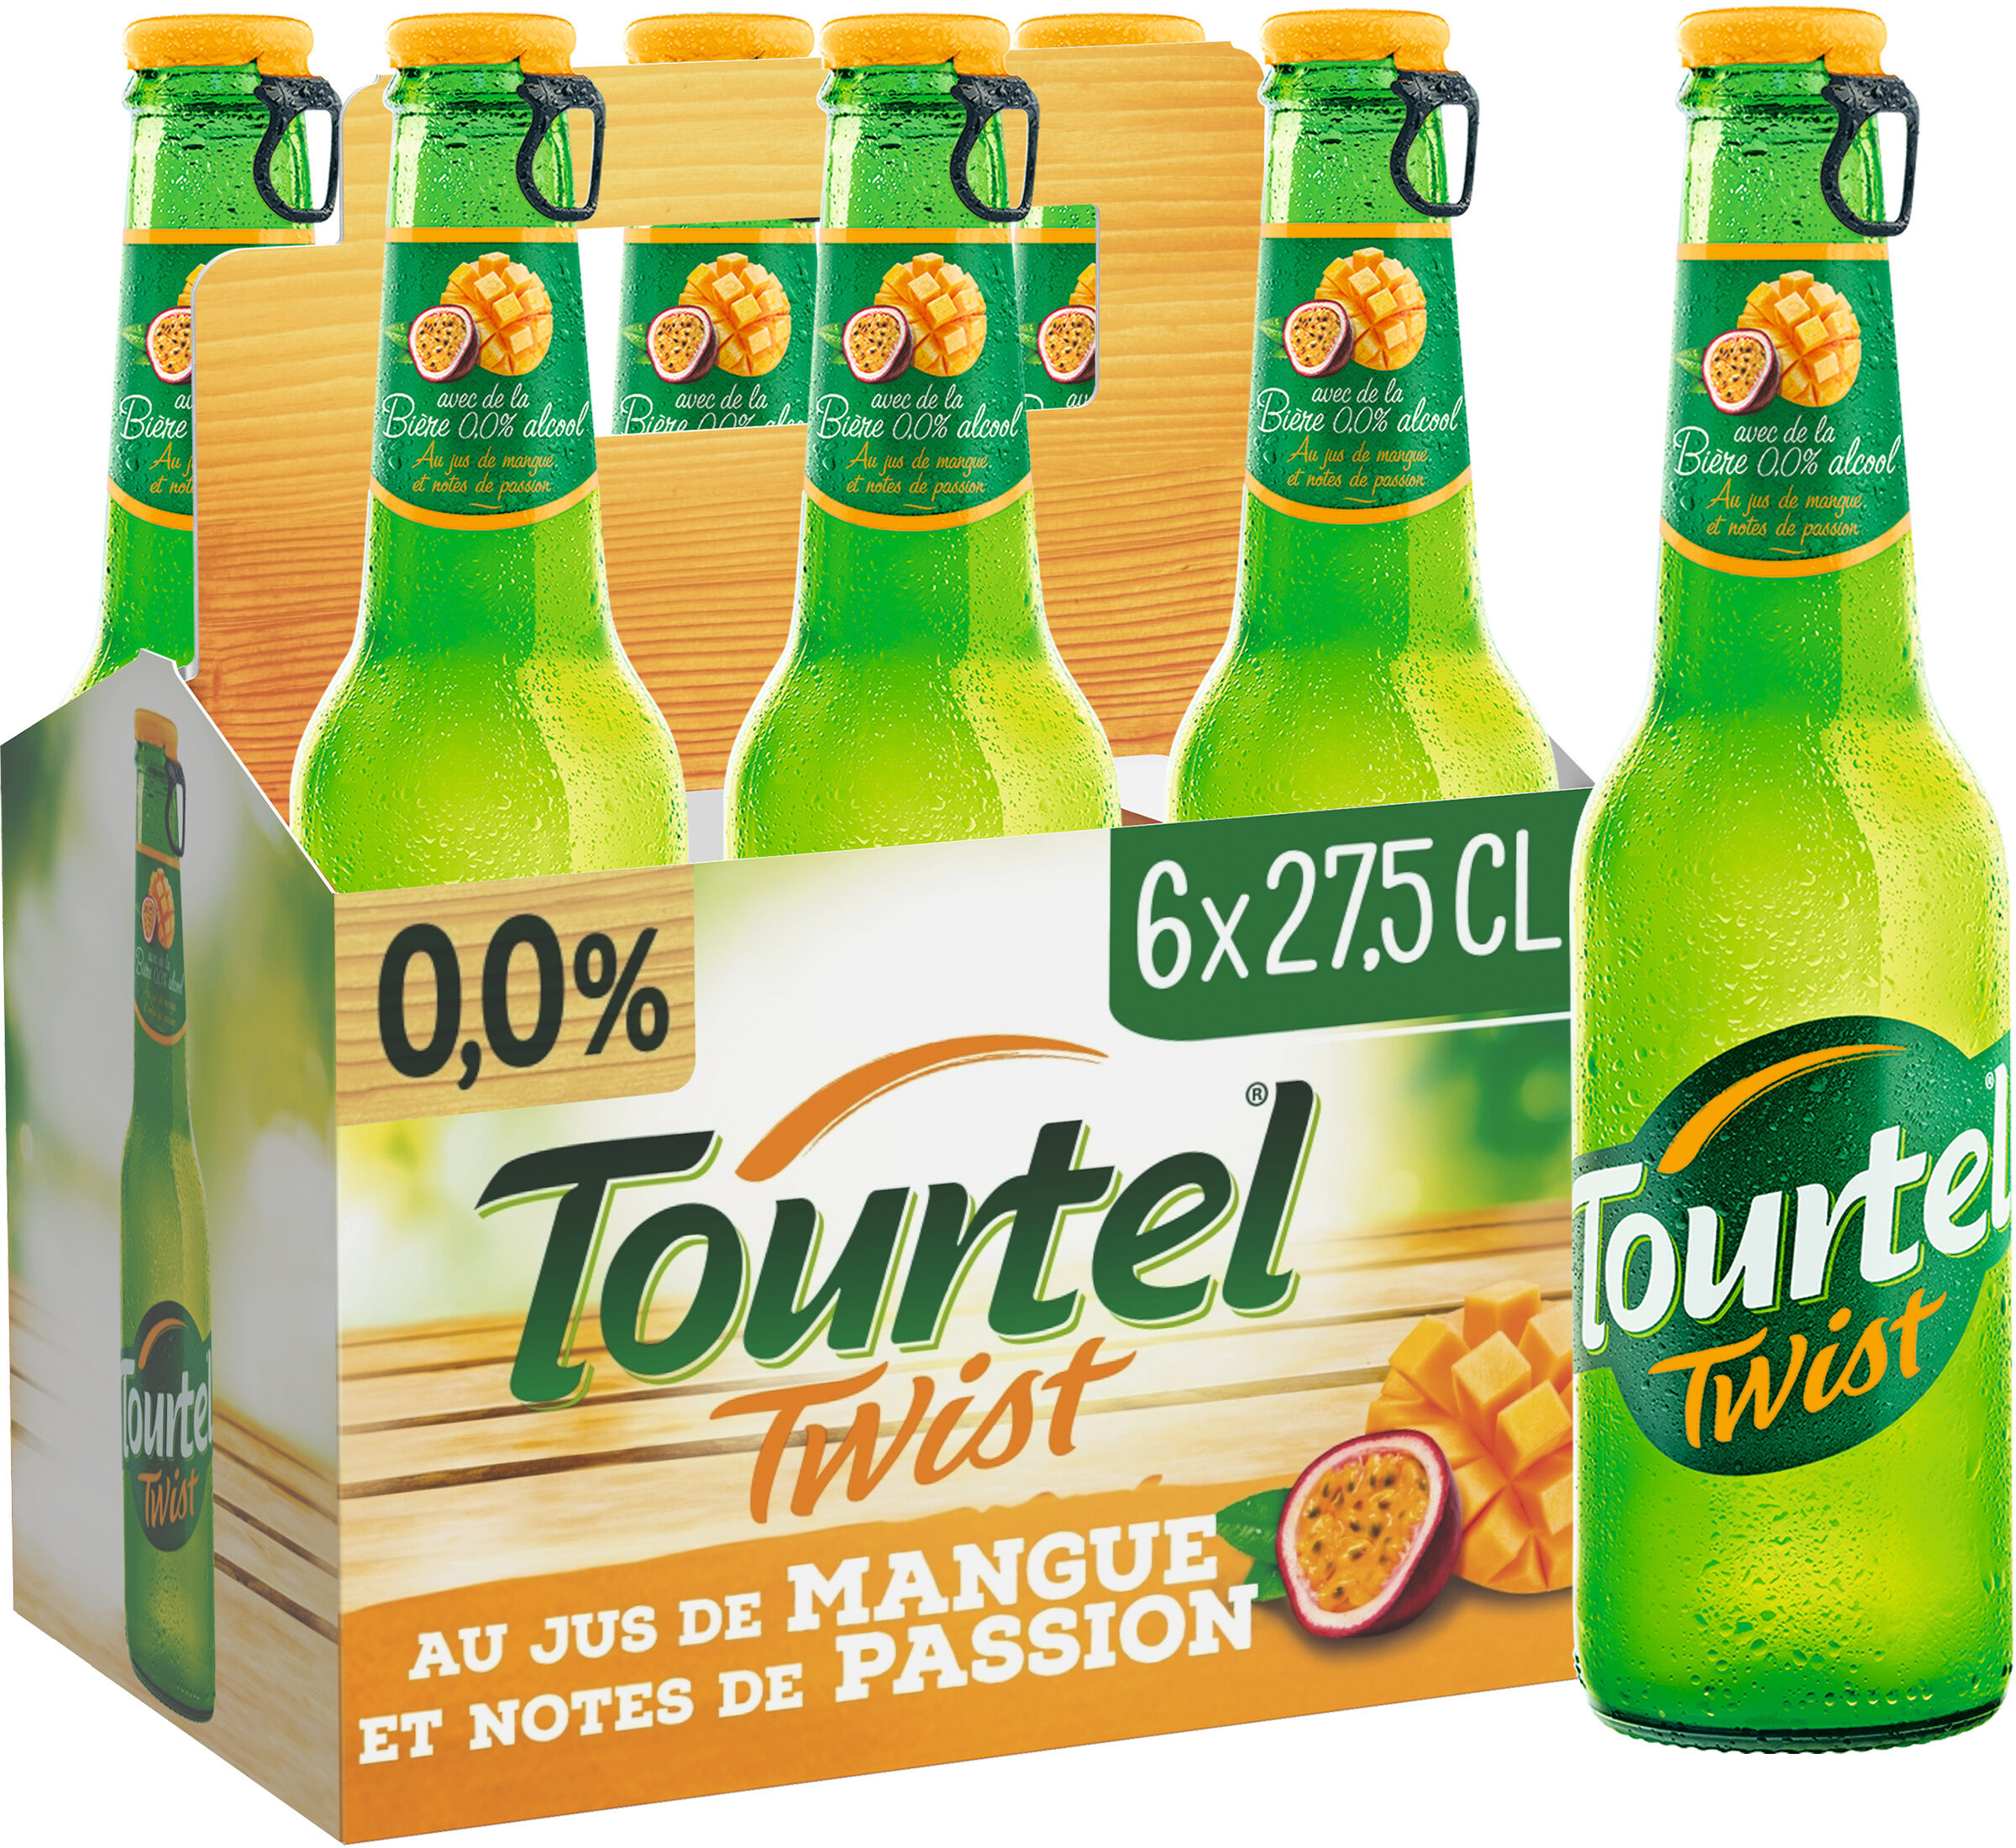 Tourtel 6X27,5CL TOURTEL TWIST MANGUE 0.0 DEGRE ALCOOL - Product - fr